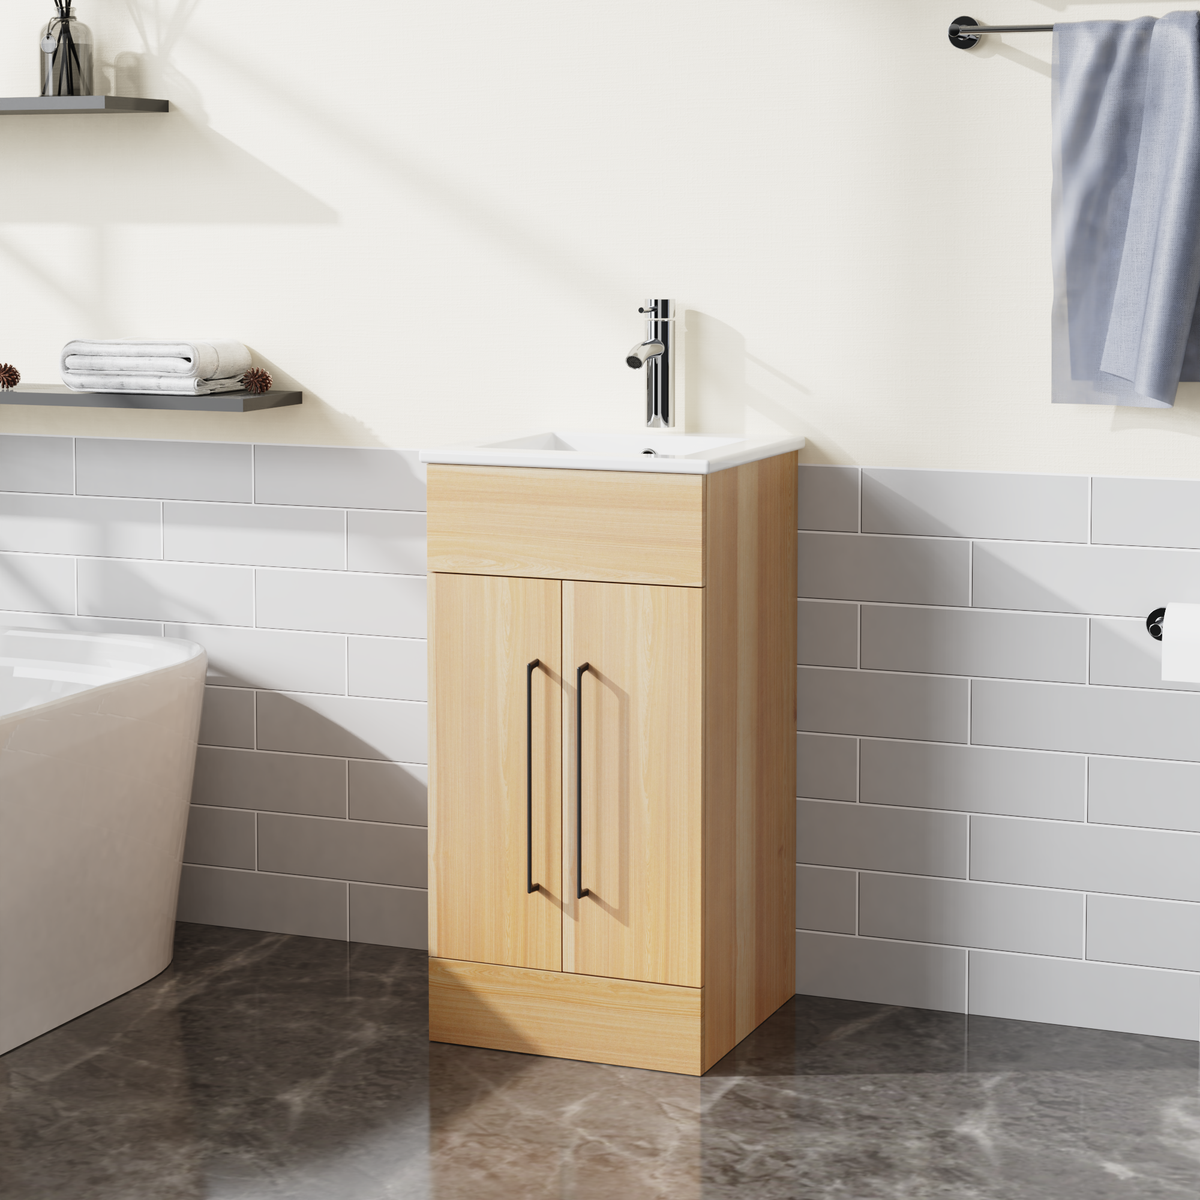 16” Small Bathroom Vanity with Single Sink Combo